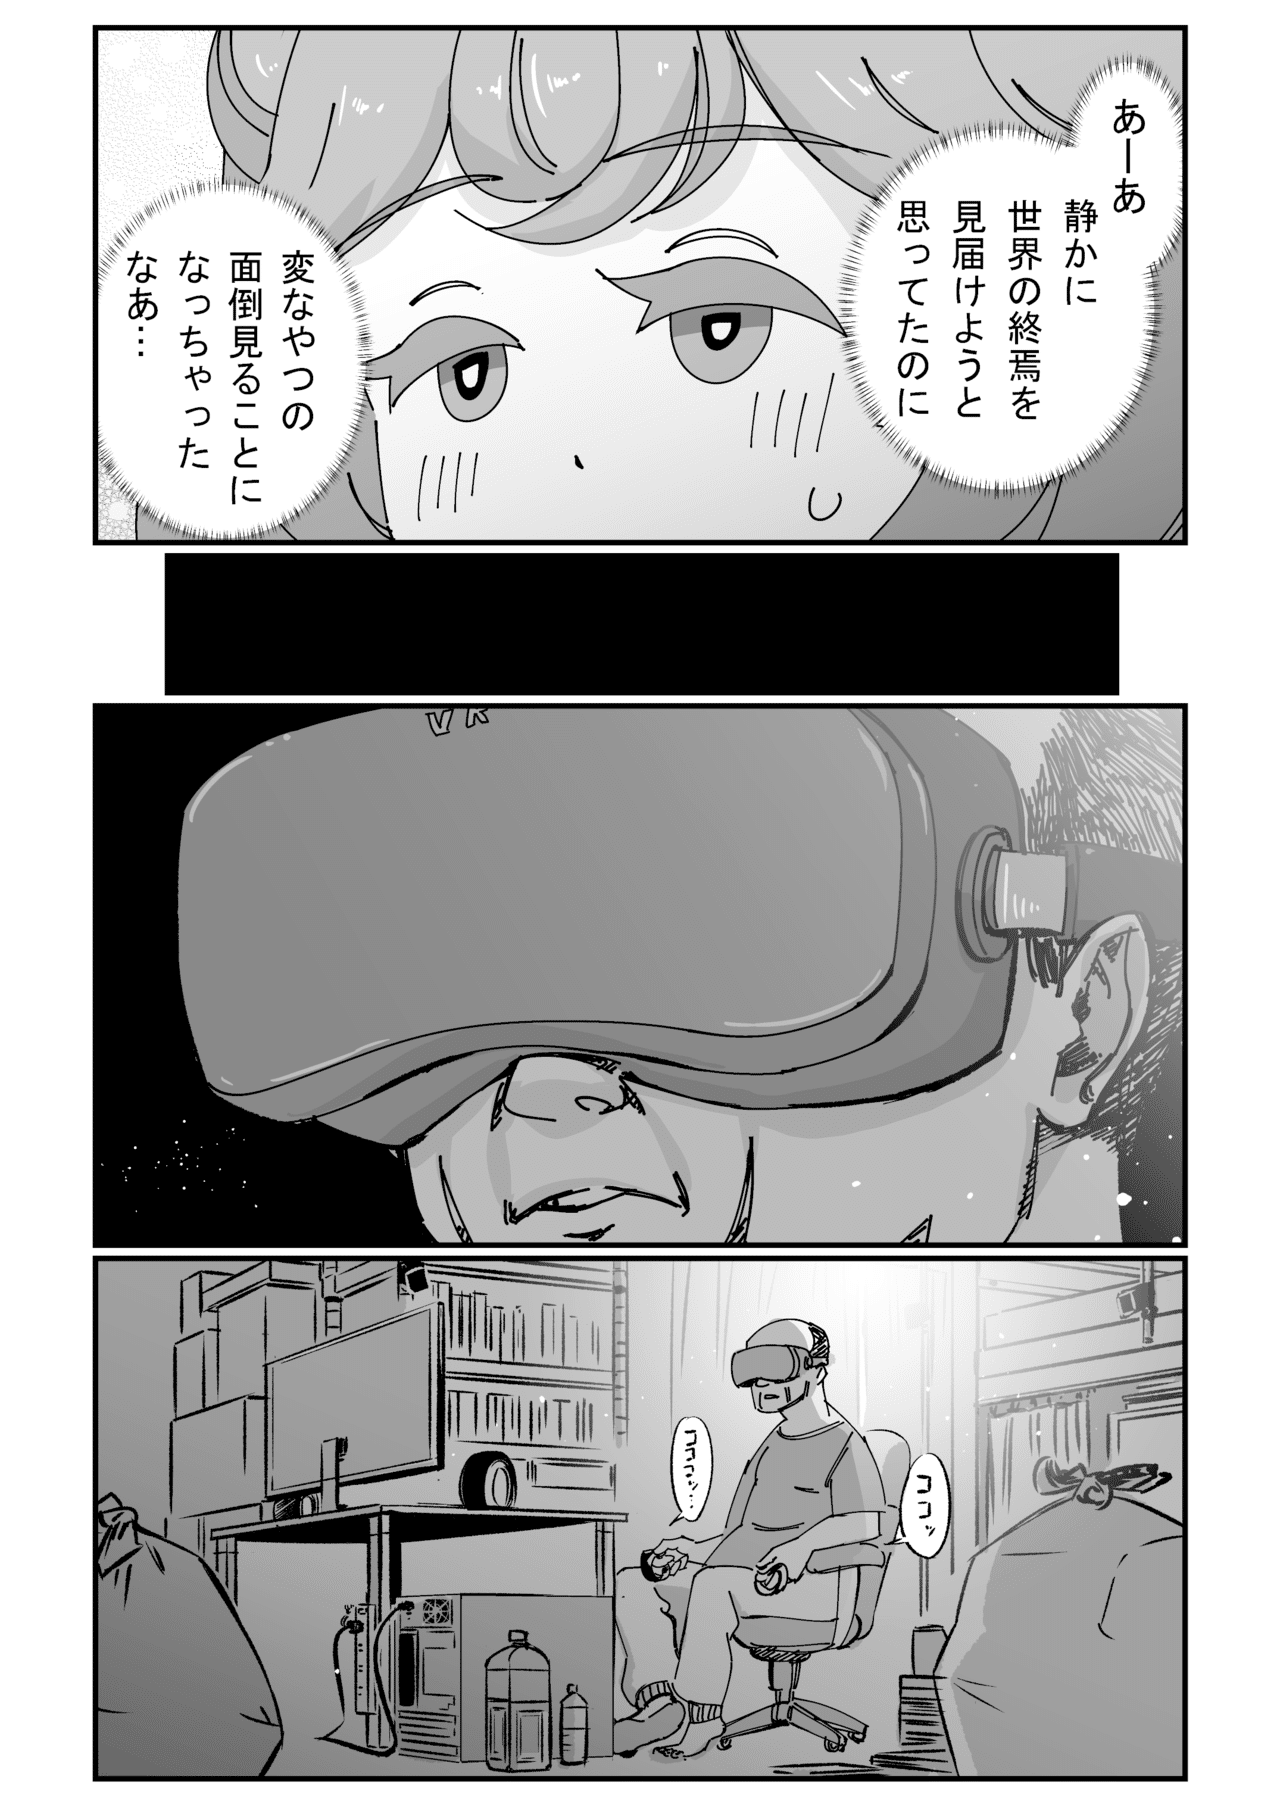 VRおじさん01_011